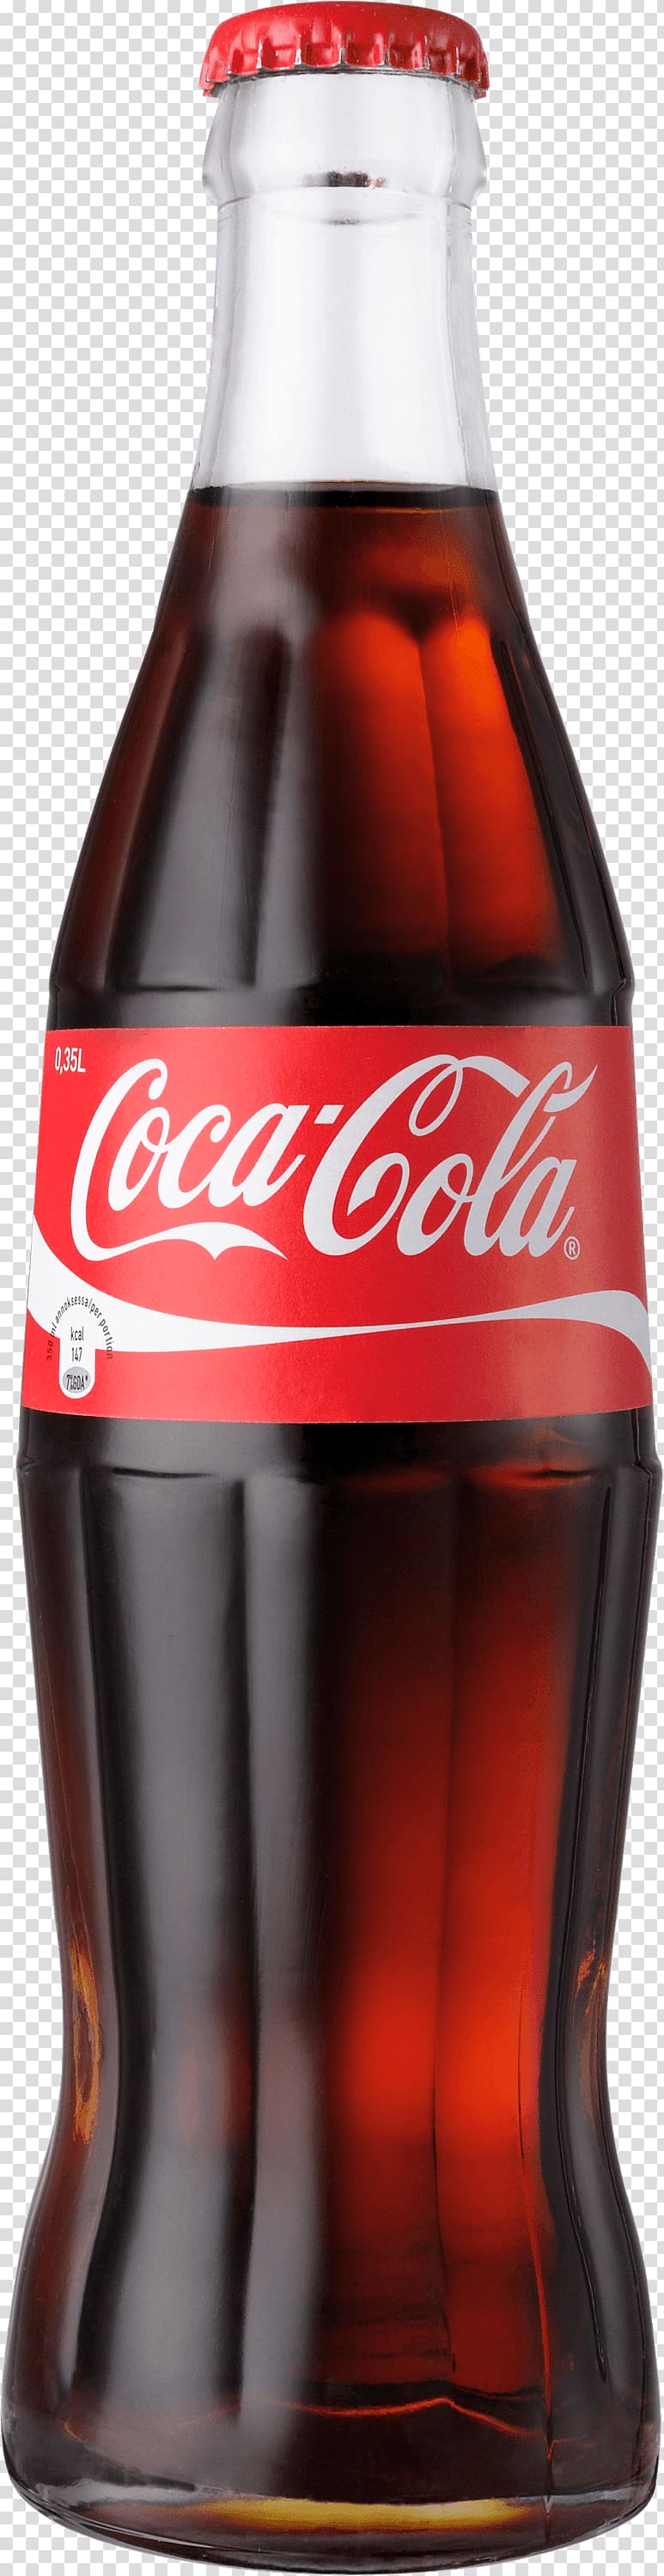 Coca Cola bottle illustration, Classic Coke Bottle Coca Cola transparent background PNG clipart